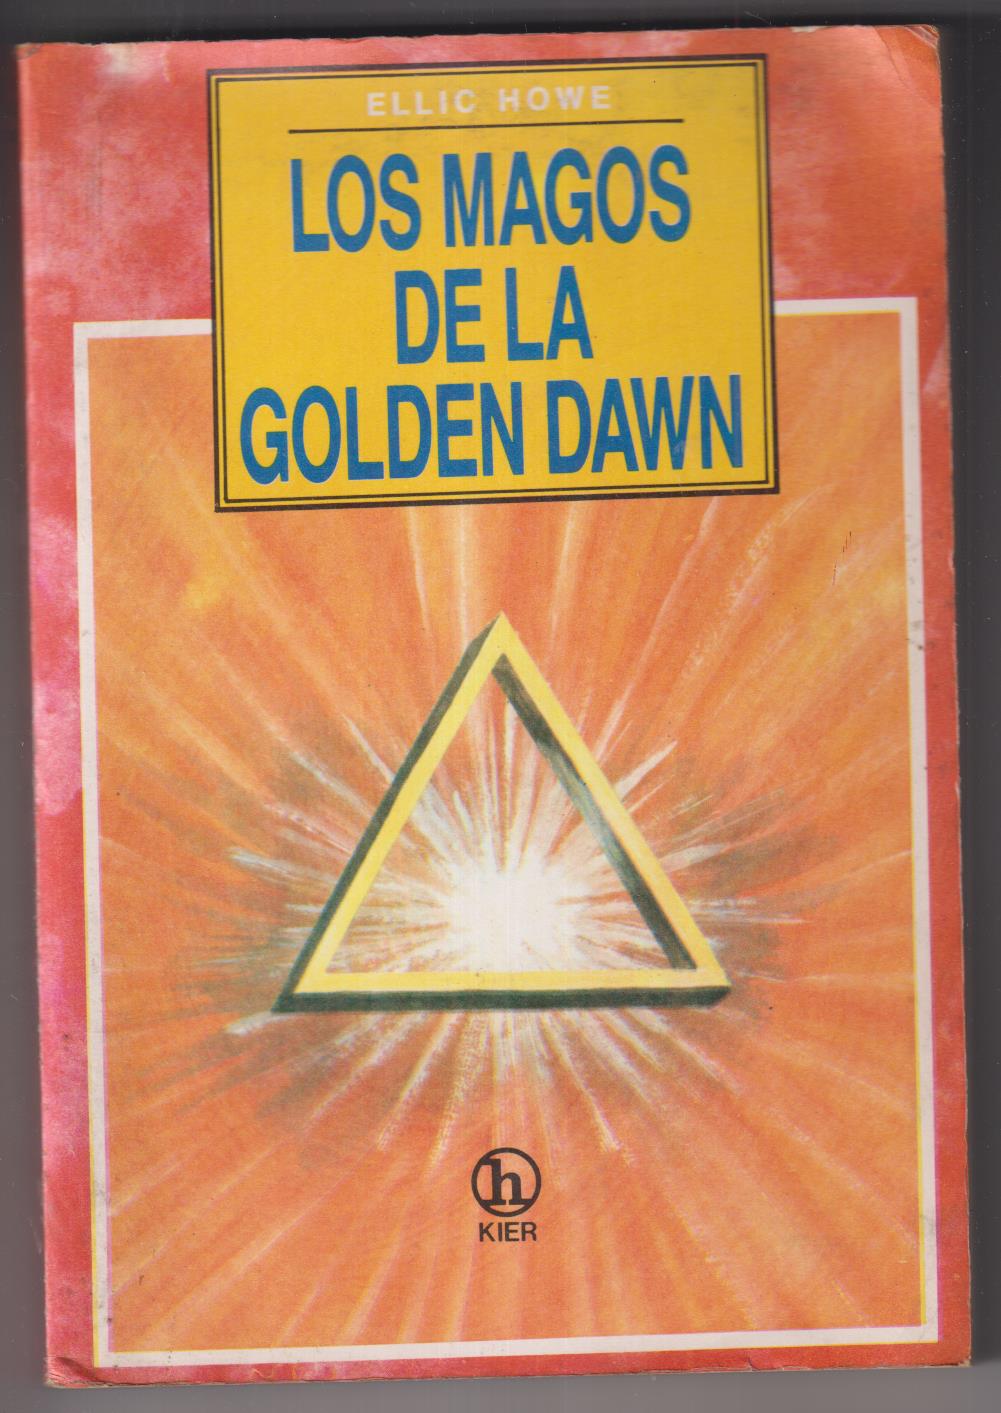 Ellic Howe. Los magos de la Golden Dawn. 1ª Edición Kier, Buenos Aires 1990